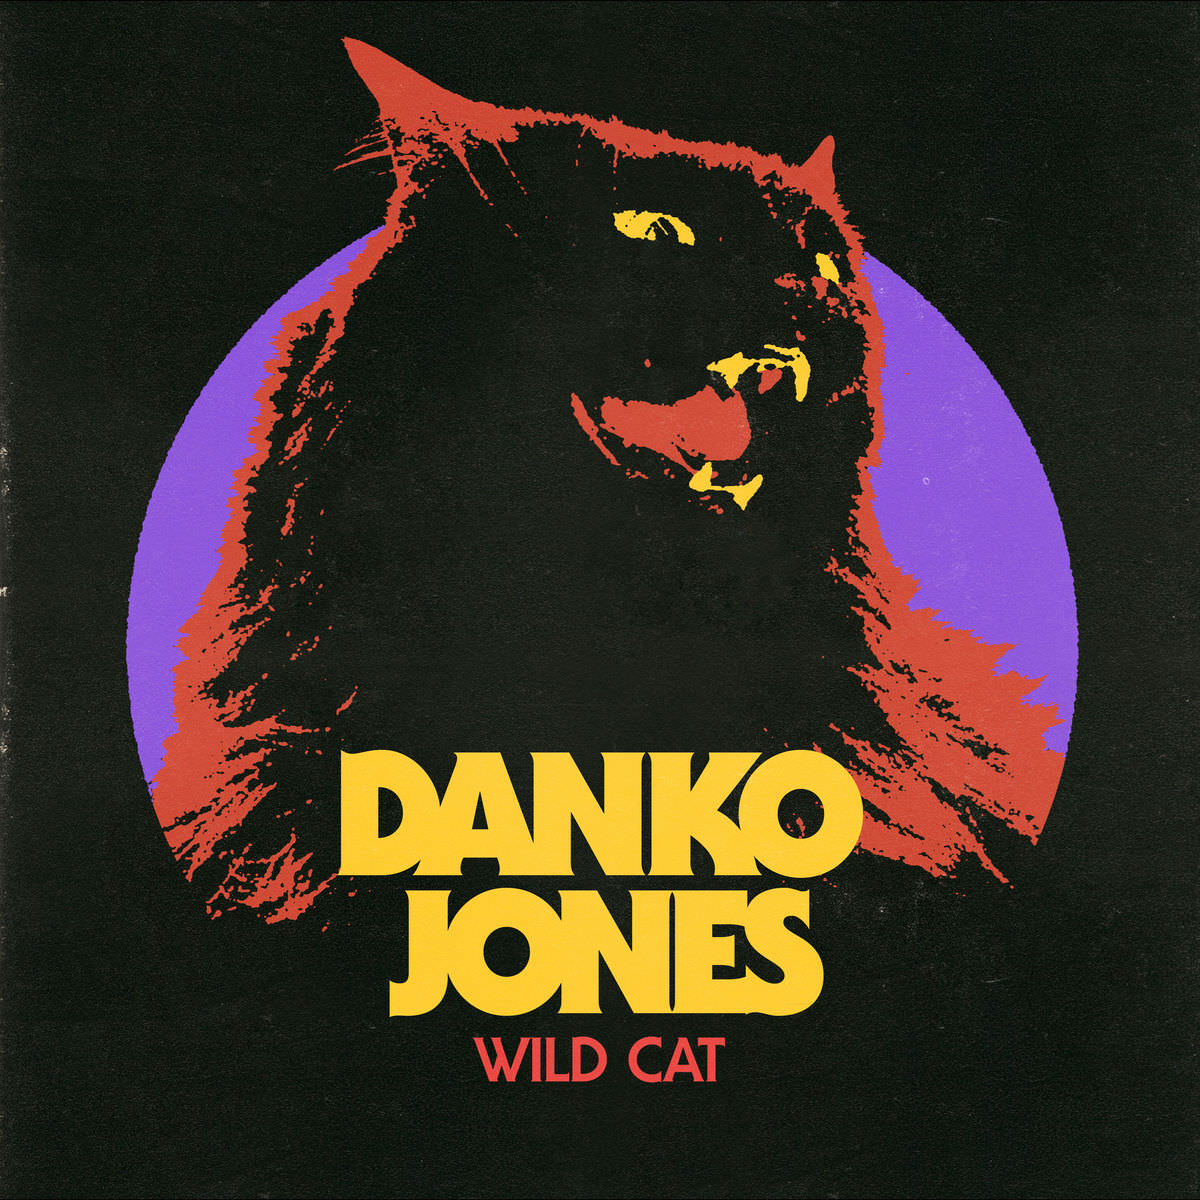 Danko Jones - Wild Cat (2017) [Qobuz FLAC 24bit/96kHz]